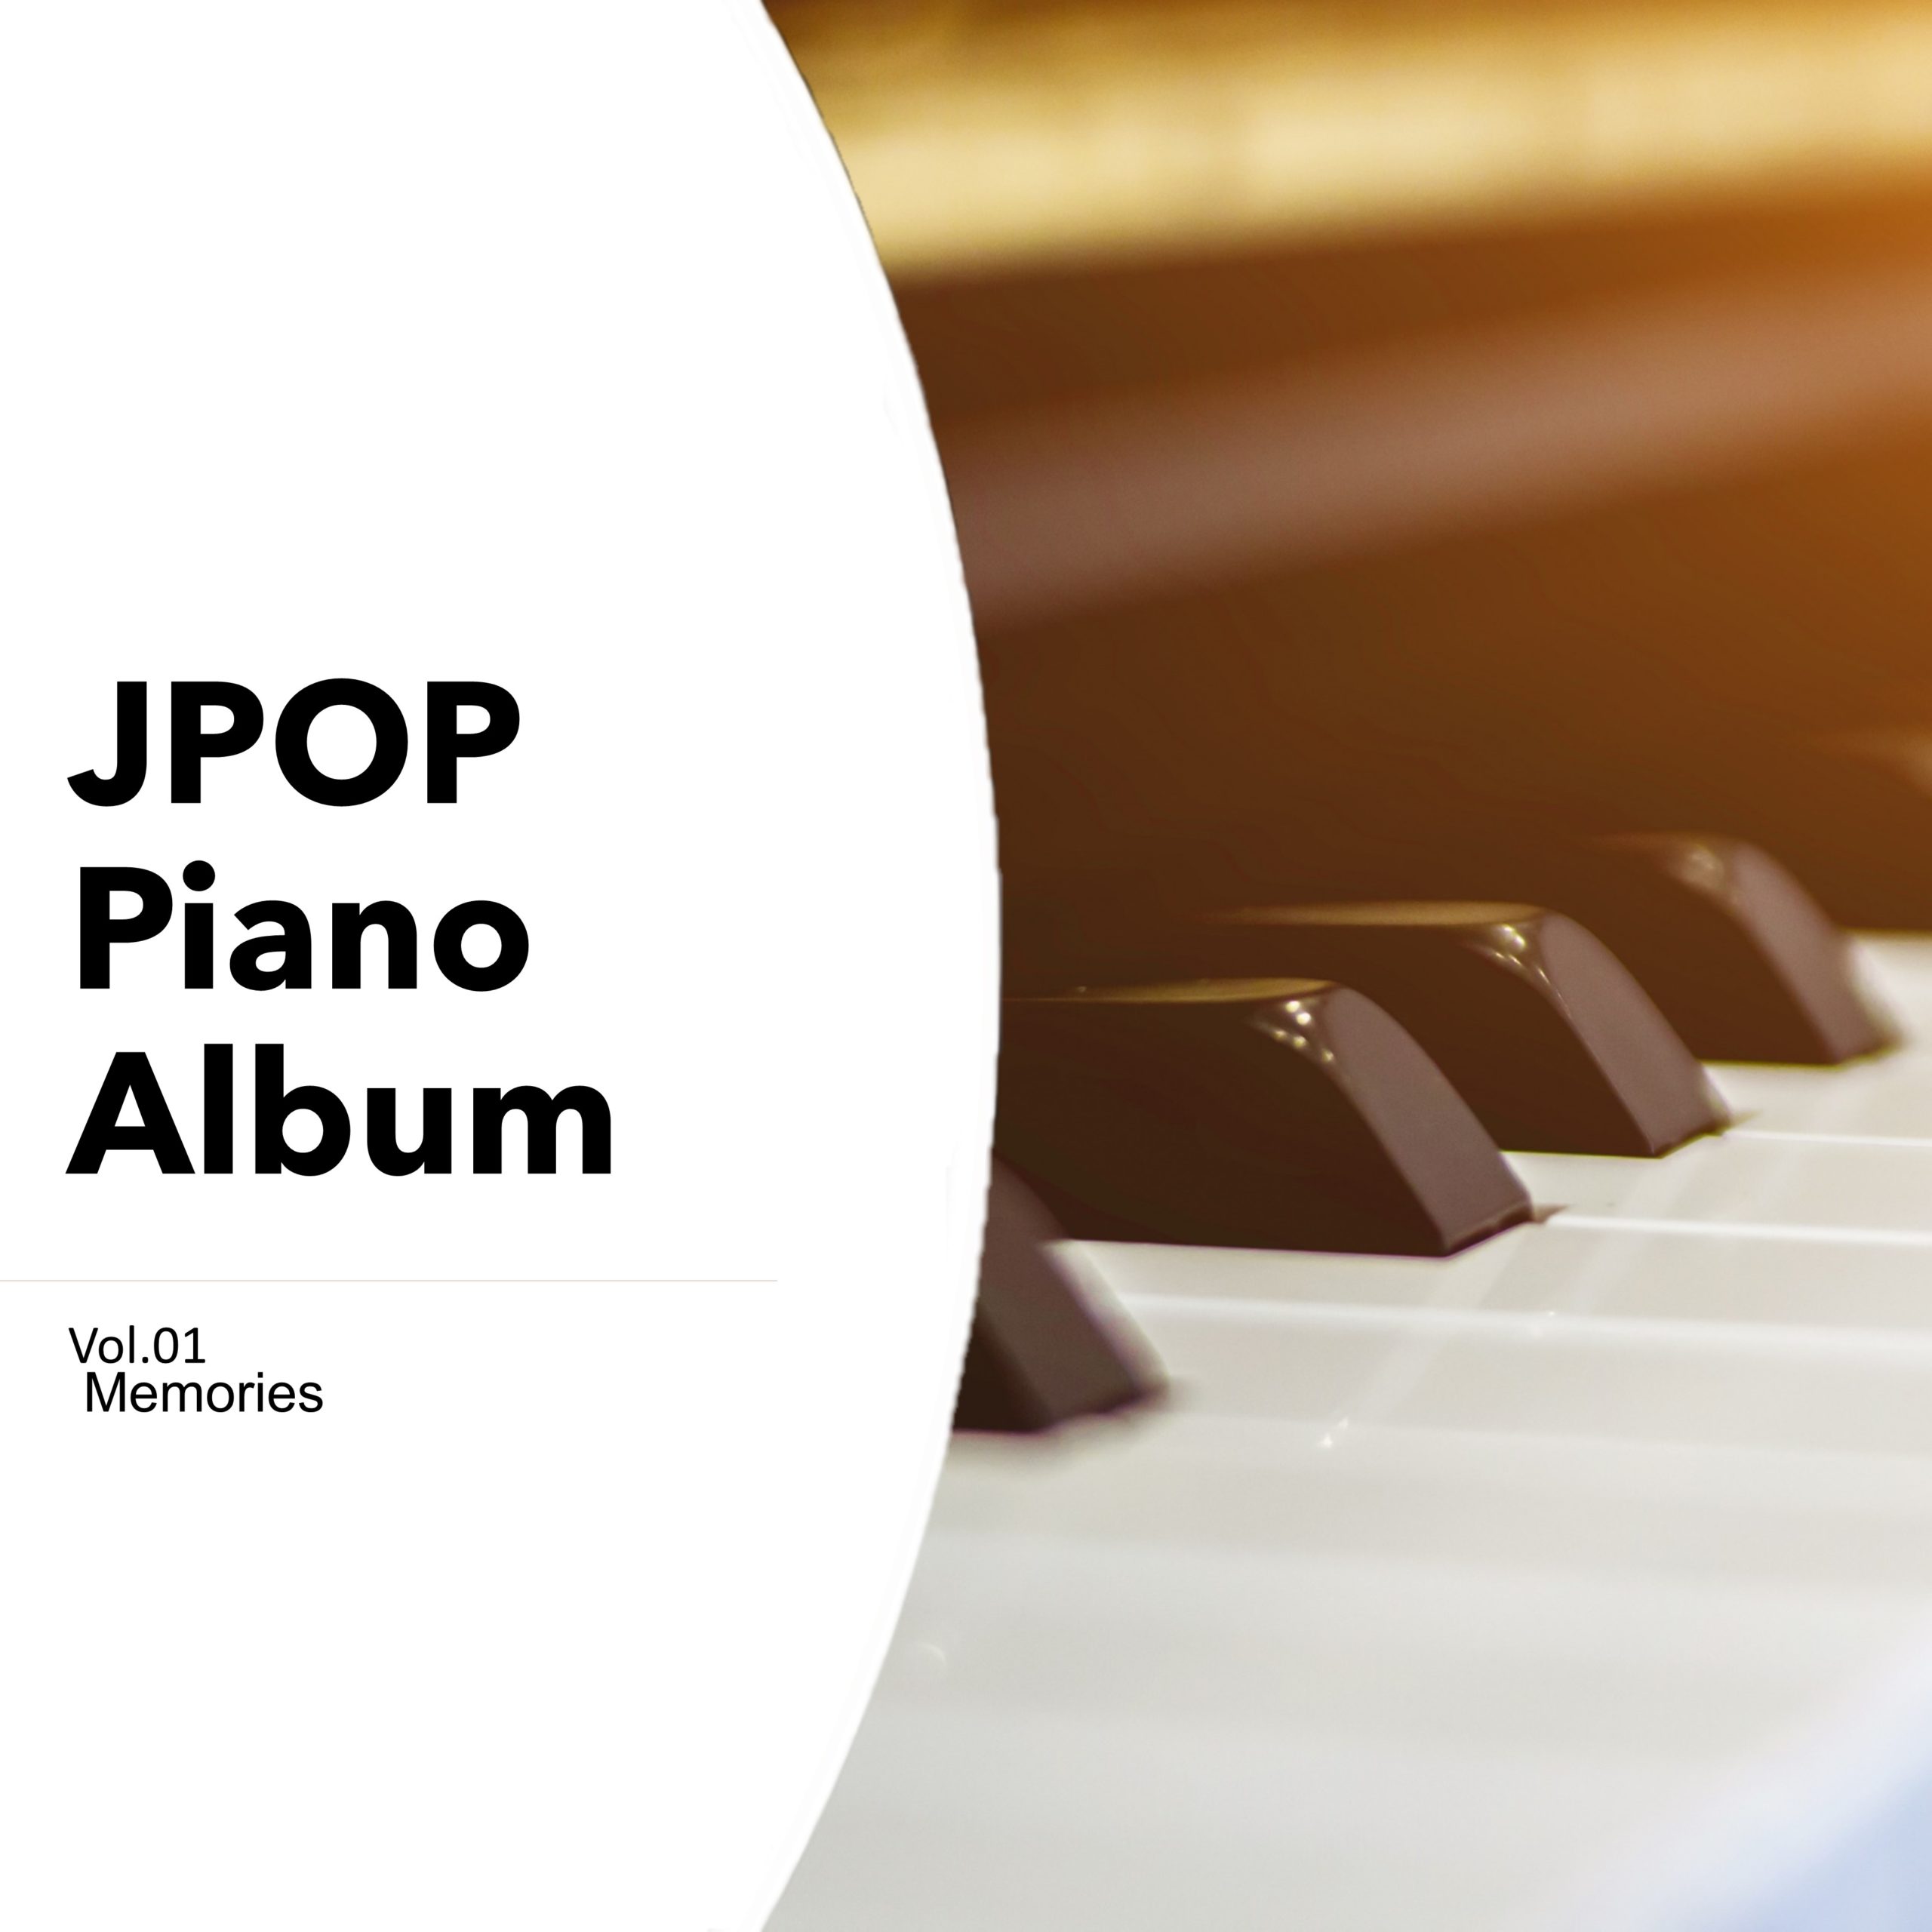 JPOP Piano Album Vol.01